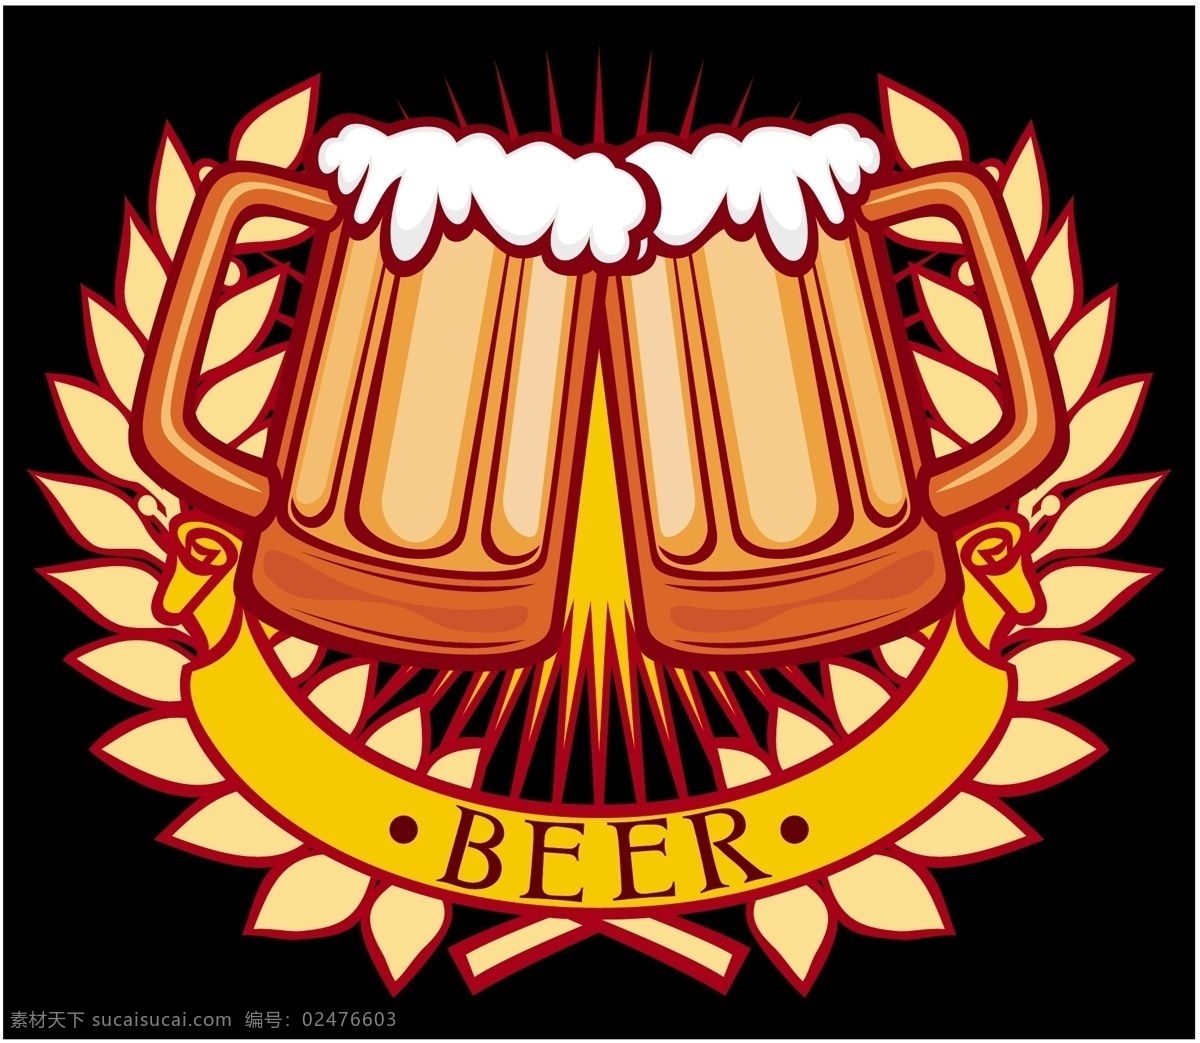 啤酒矢量图 啤酒节 啤酒 啤酒标识 beer 黑色